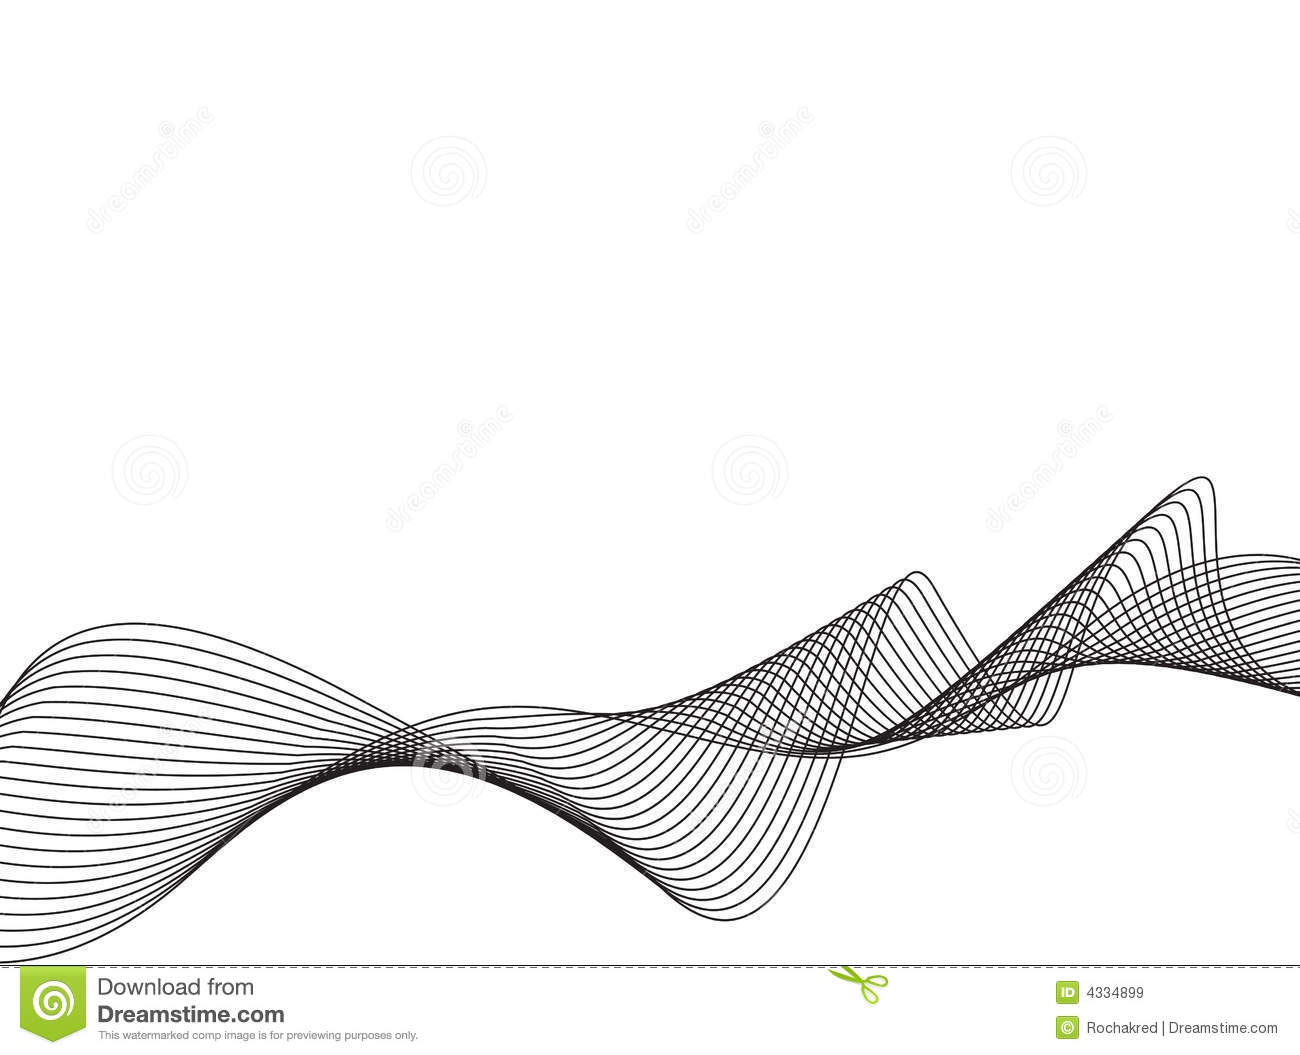 Waves Line Vector Art